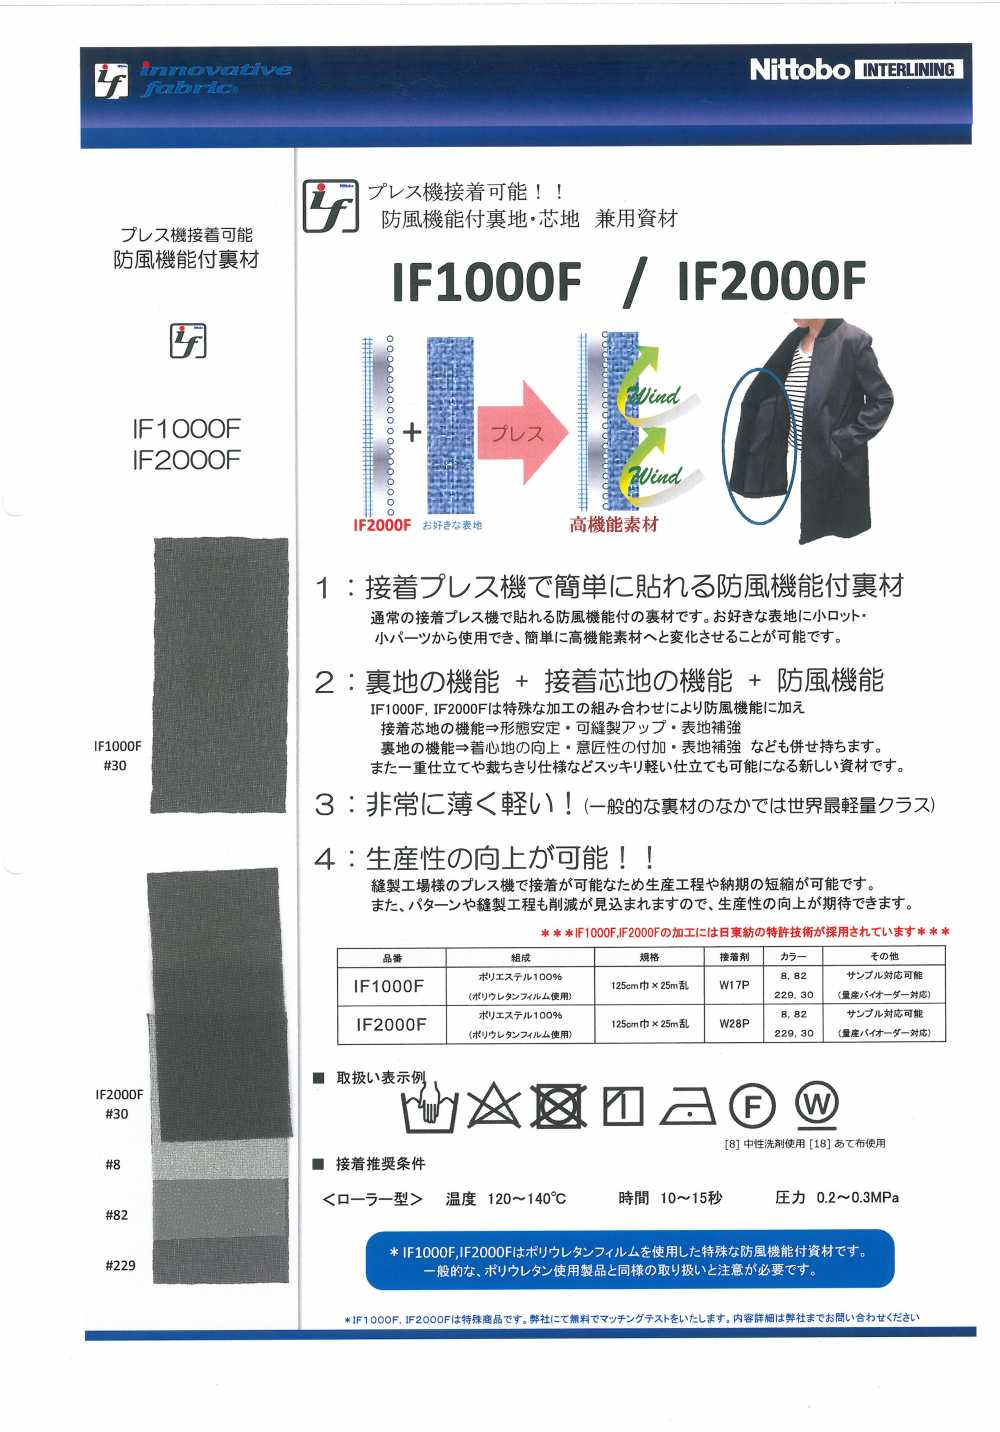 IF2000F Fodera / Materiale Interfodera Con Funzione Antivento Nittobo